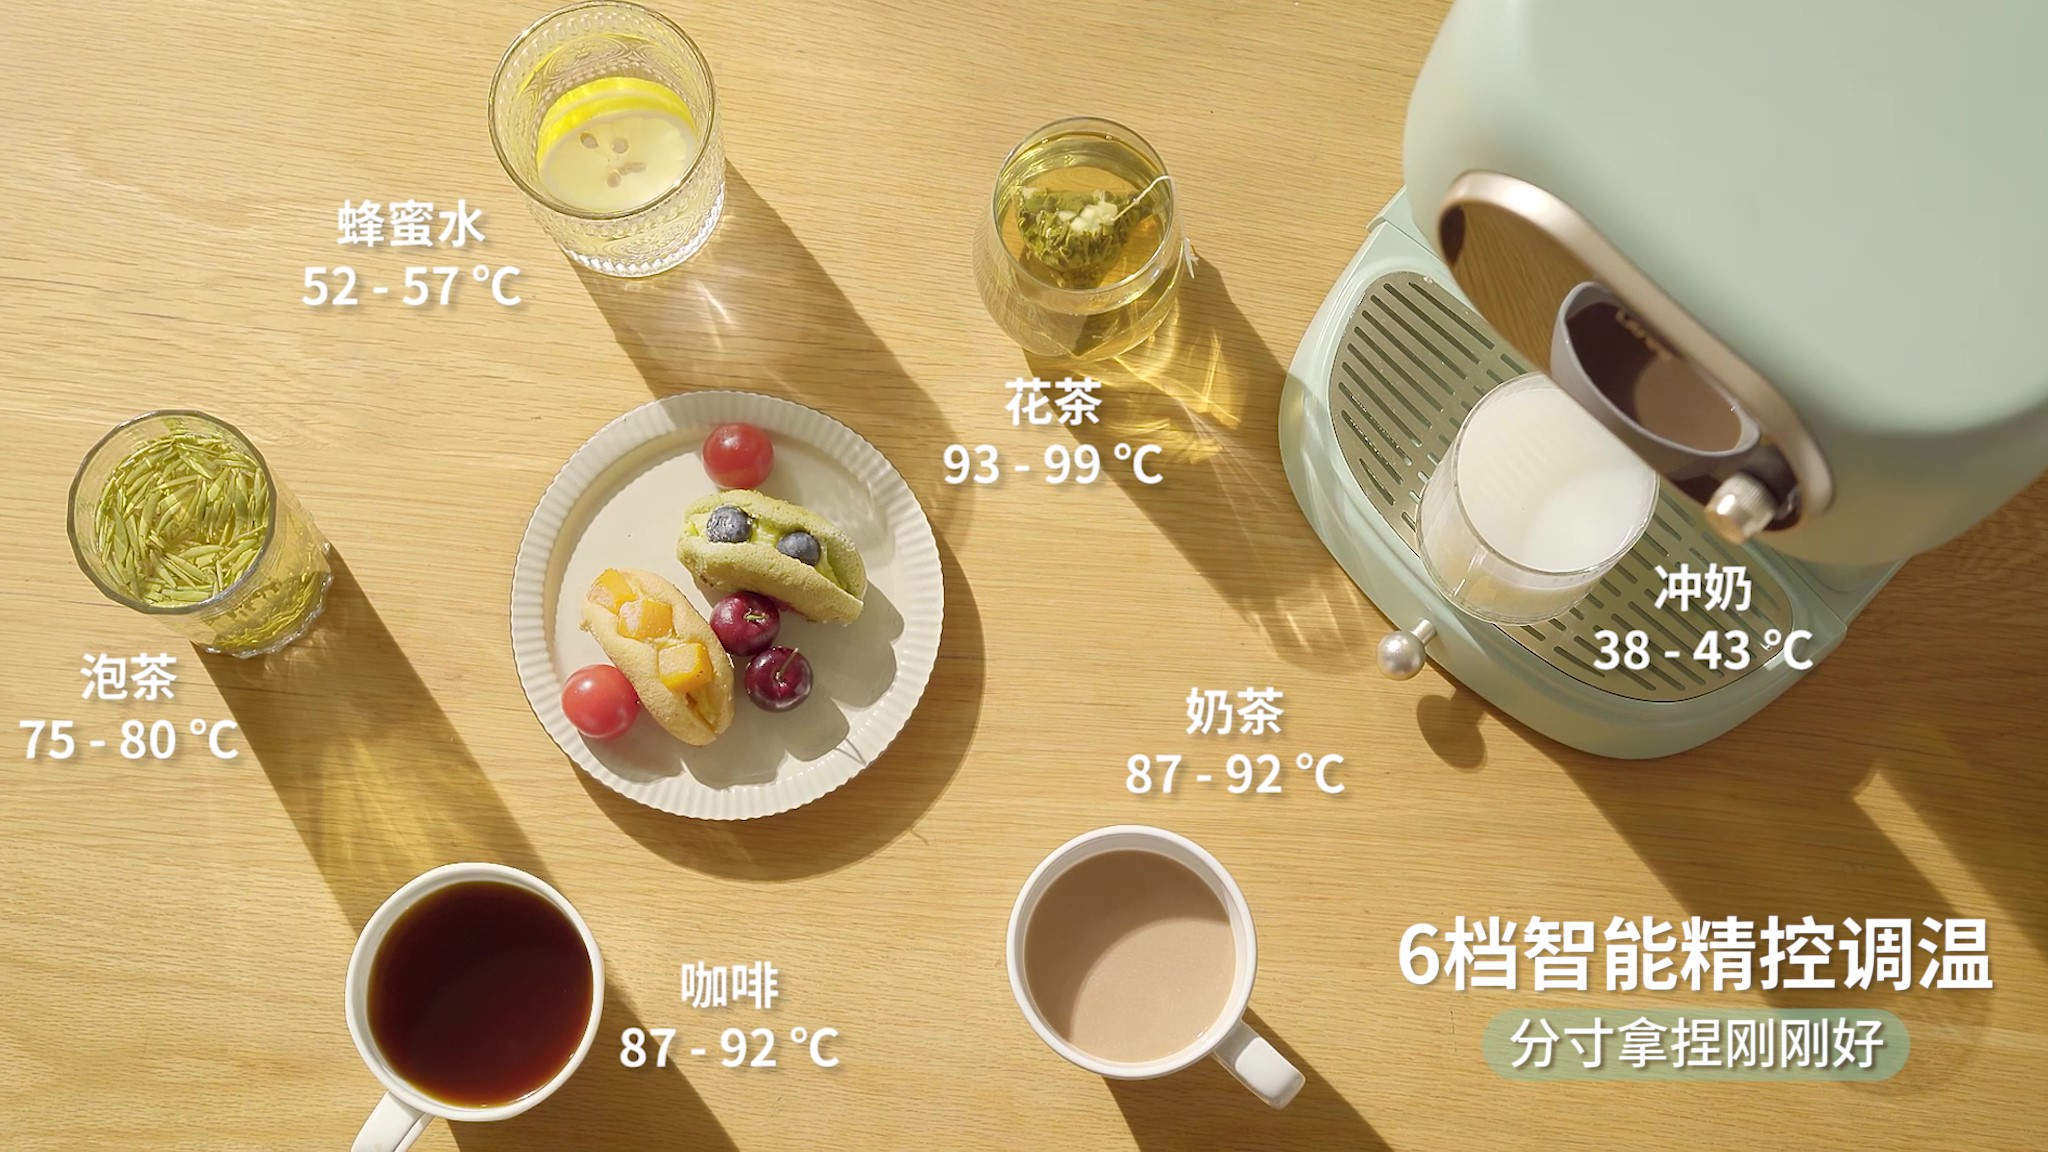 6档智能精控调温 蜂蜜·咖啡·泡茶